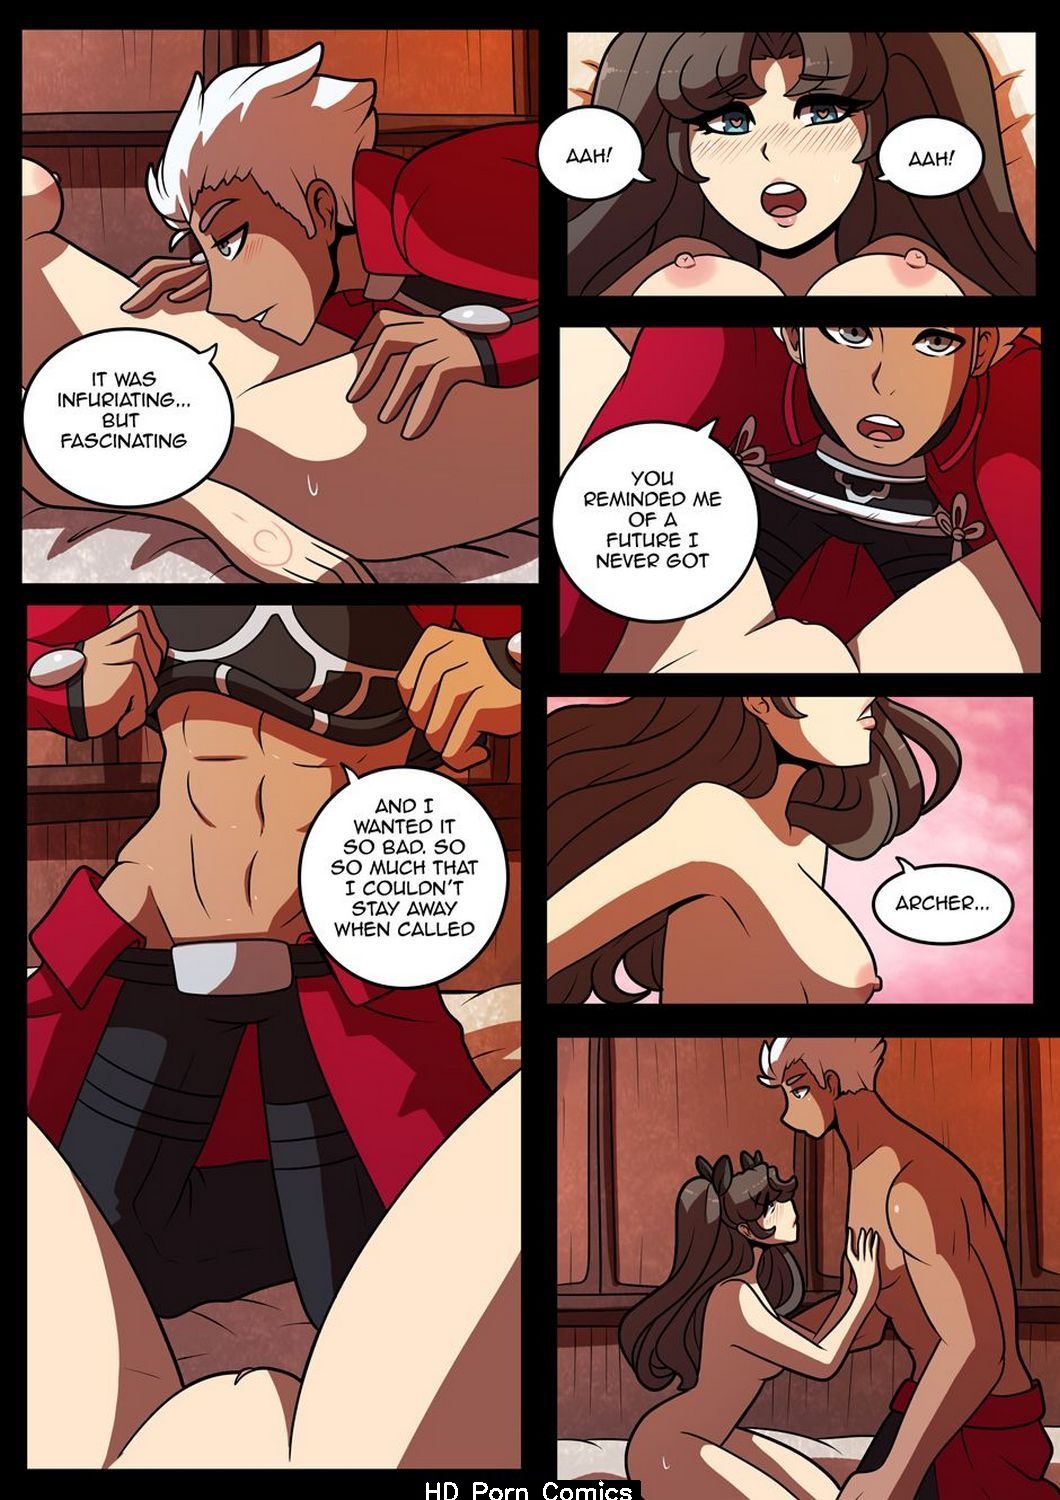 1060px x 1500px - Archer's Desire comic porn - HD Porn Comics